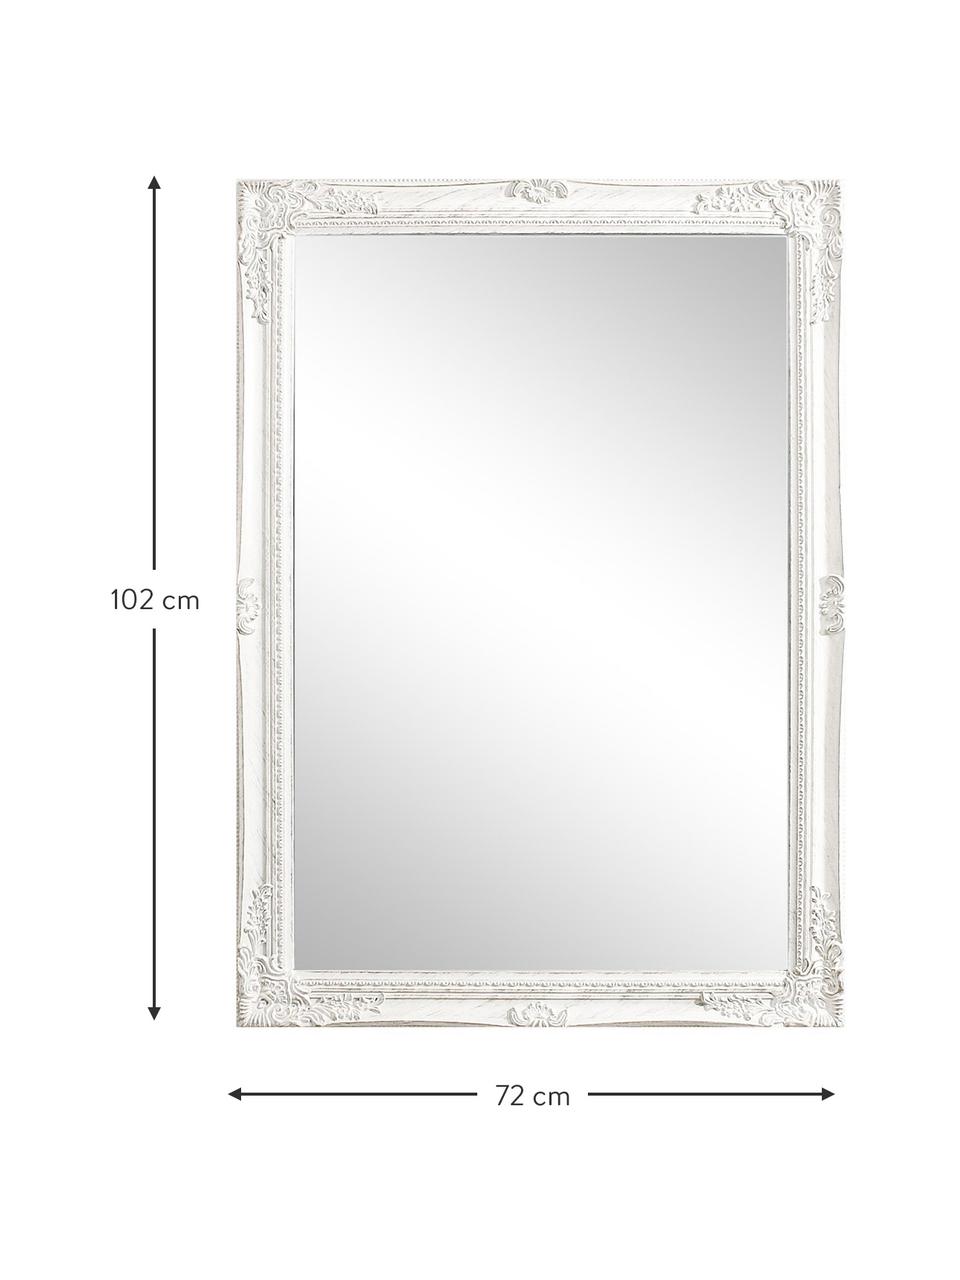 Eckiger Wandspiegel Miro mit weissem Paulowniaholzrahmen, Rahmen: Paulowniaholz, beschichte, Spiegelfläche: Spiegelglas, Weiss, B 72 x H 102 cm